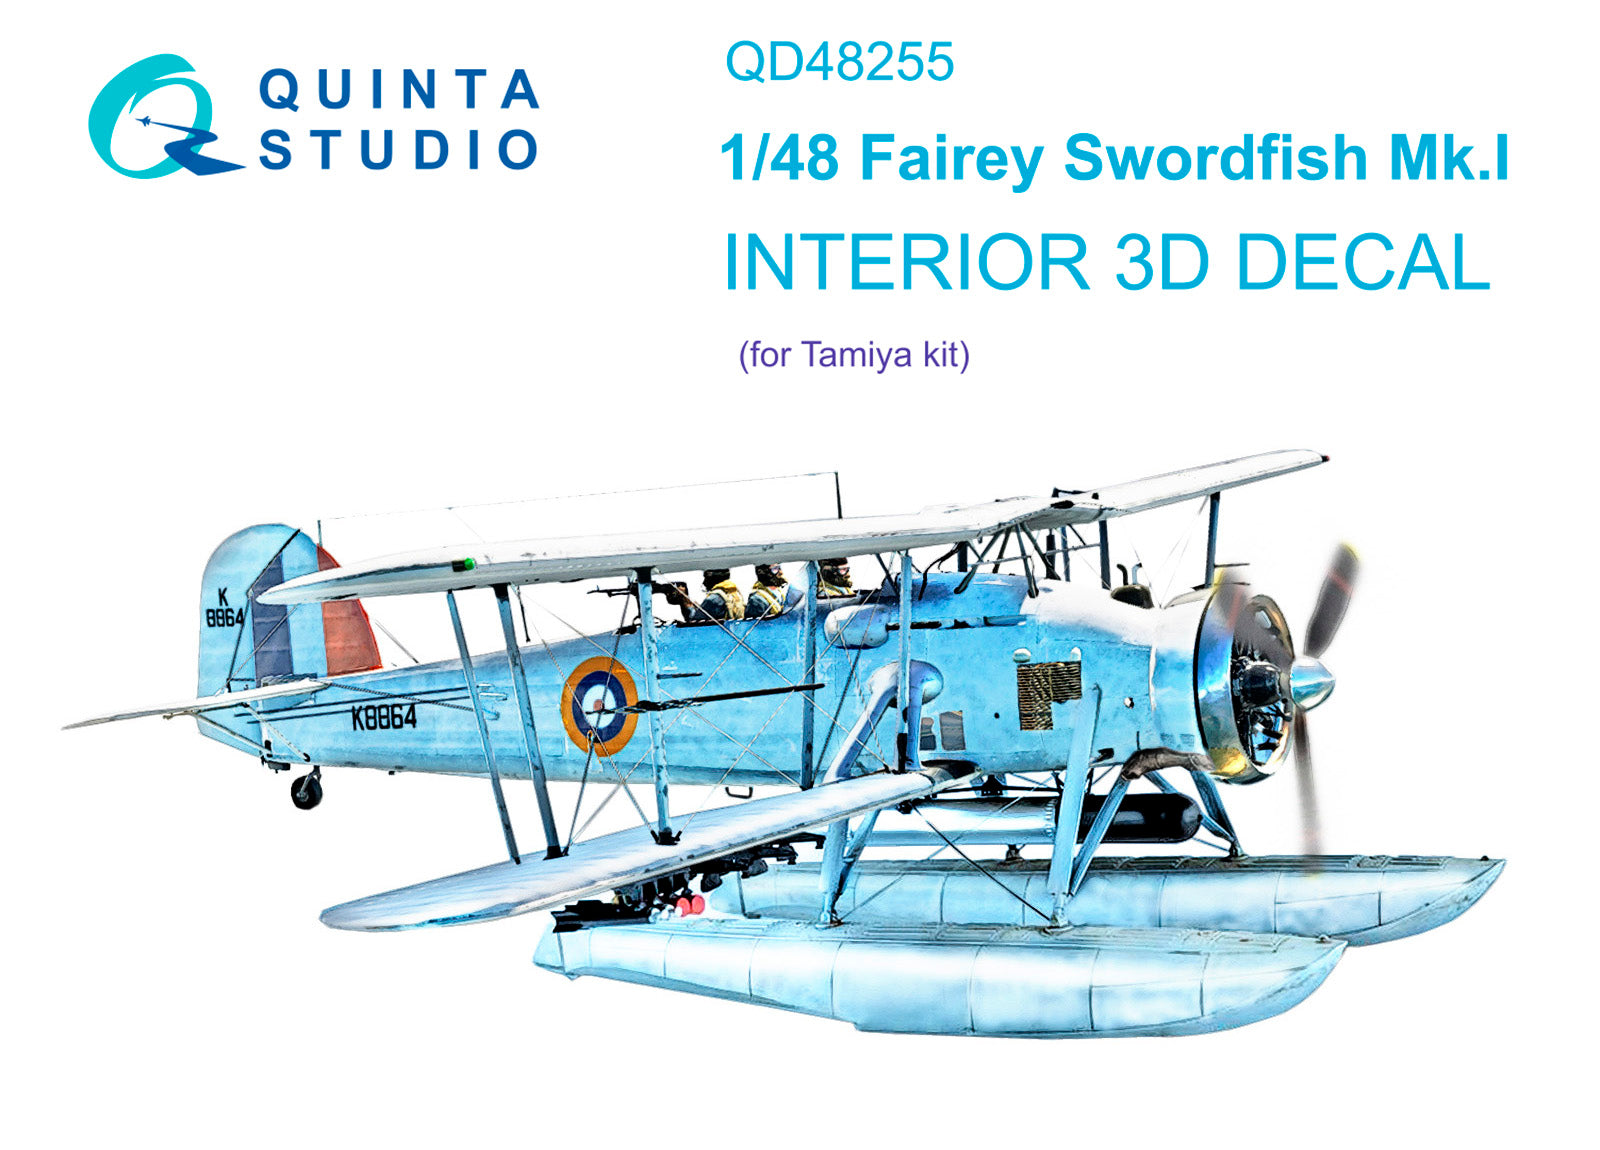 Quinta Studio - 1/48 Swordfish Mk.l QD48255 for Tamiya kit